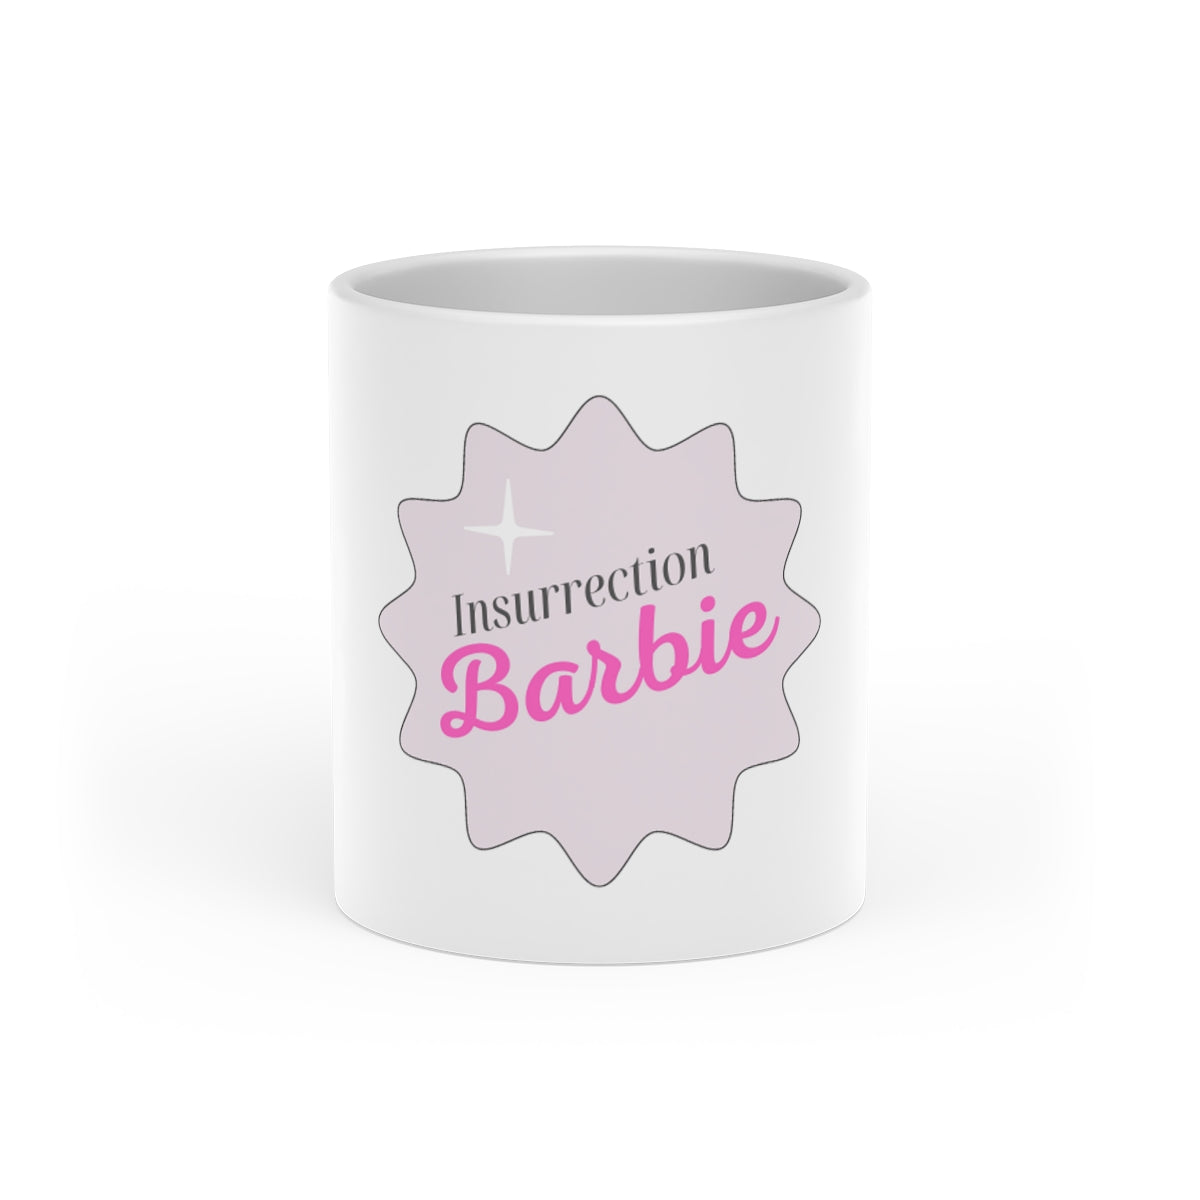 Insurrection Barbie Heart-Shaped Mug